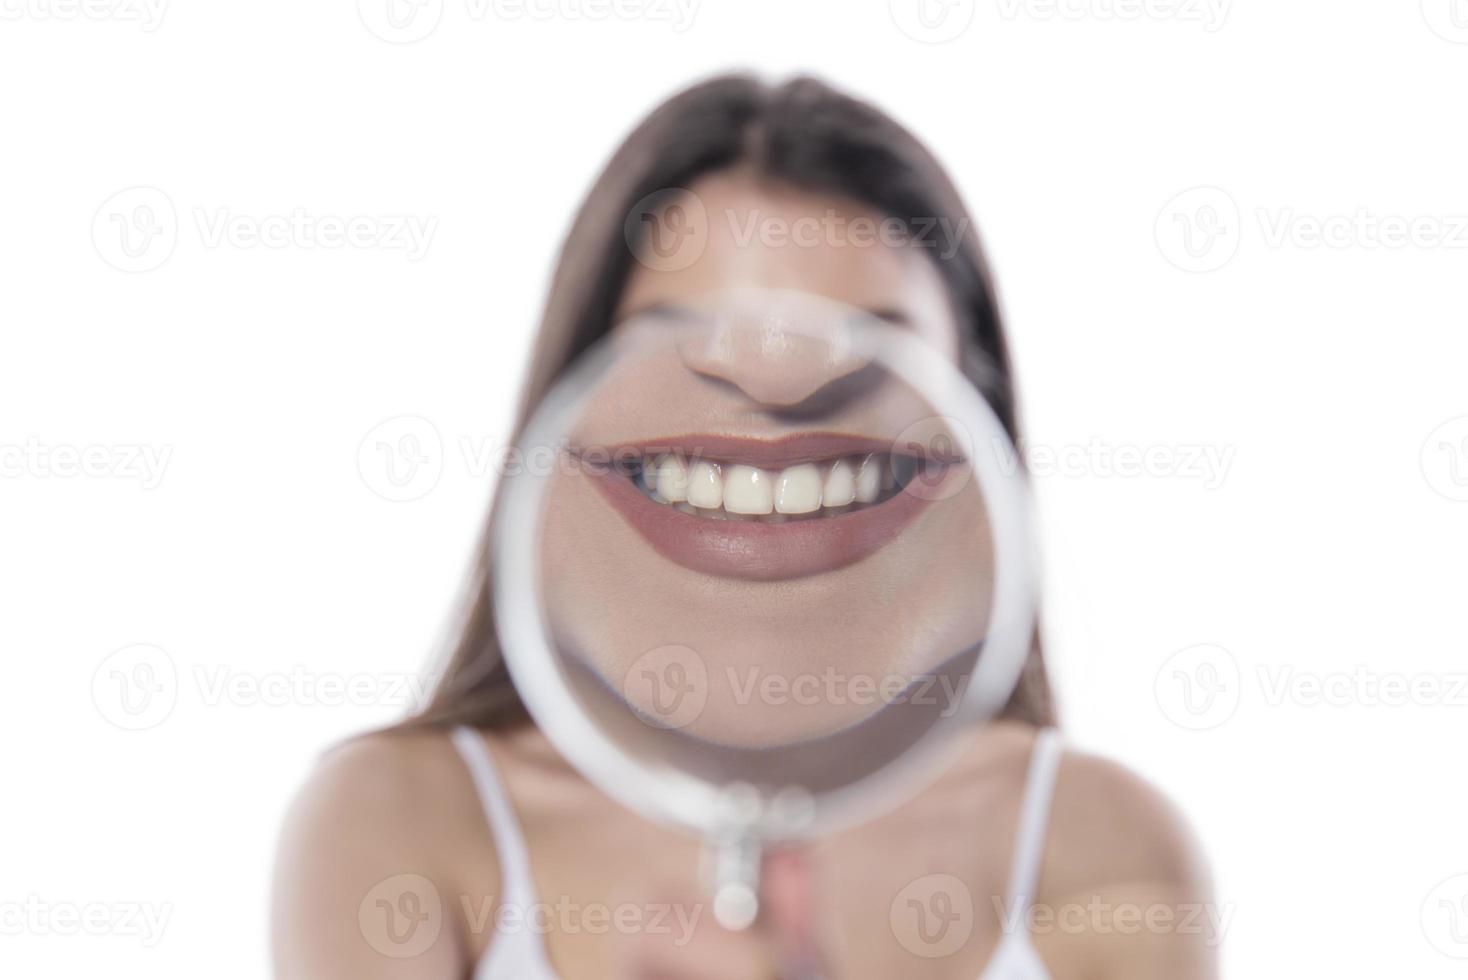 jong vrouw met perfect glimlach en gezond tanden achter vergroten glas foto